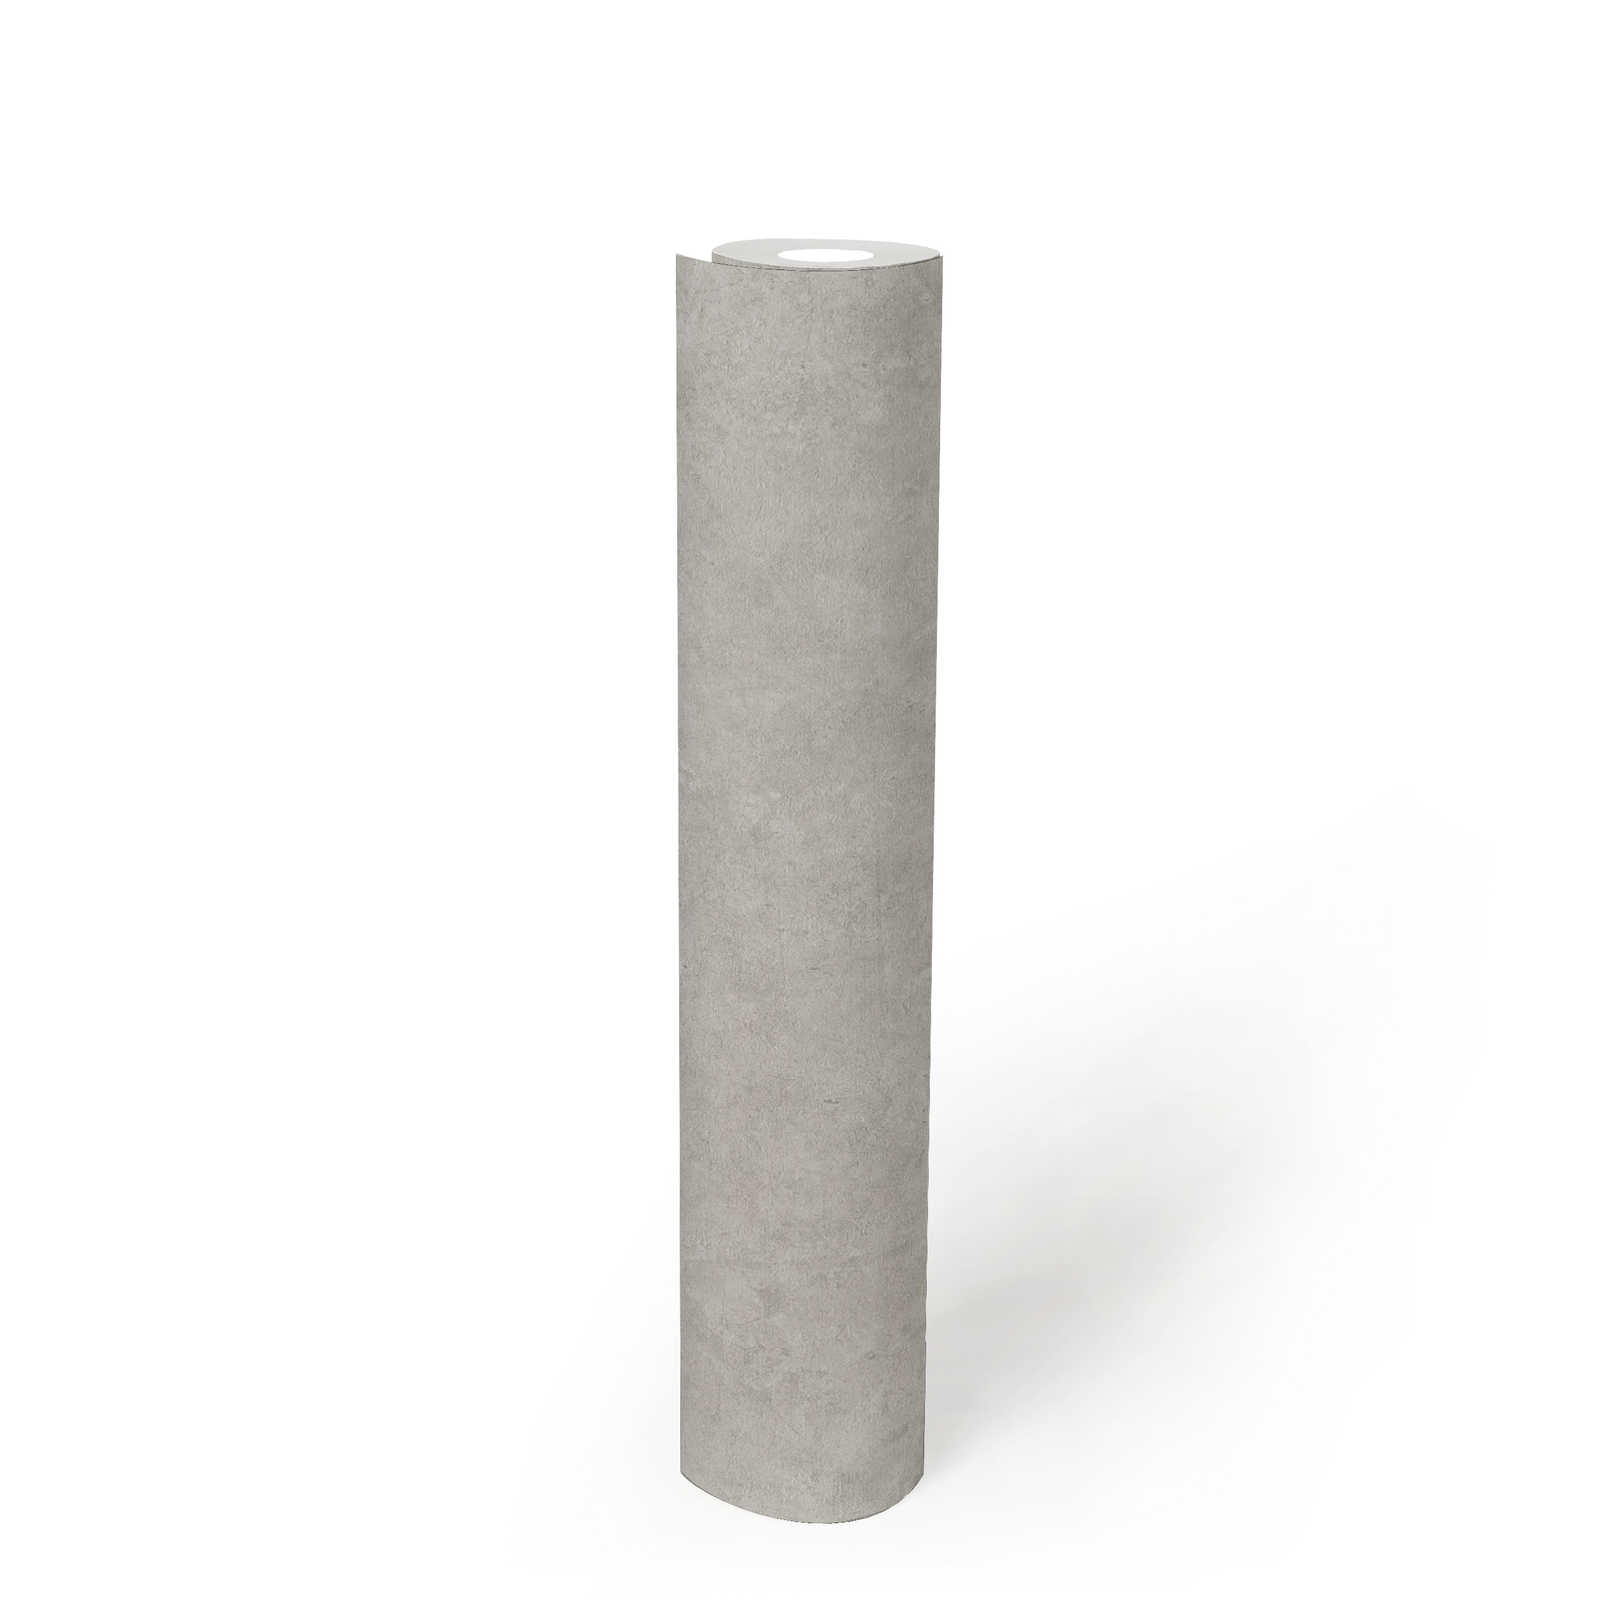             Concrete look non-woven wallpaper plain pattern - grey
        